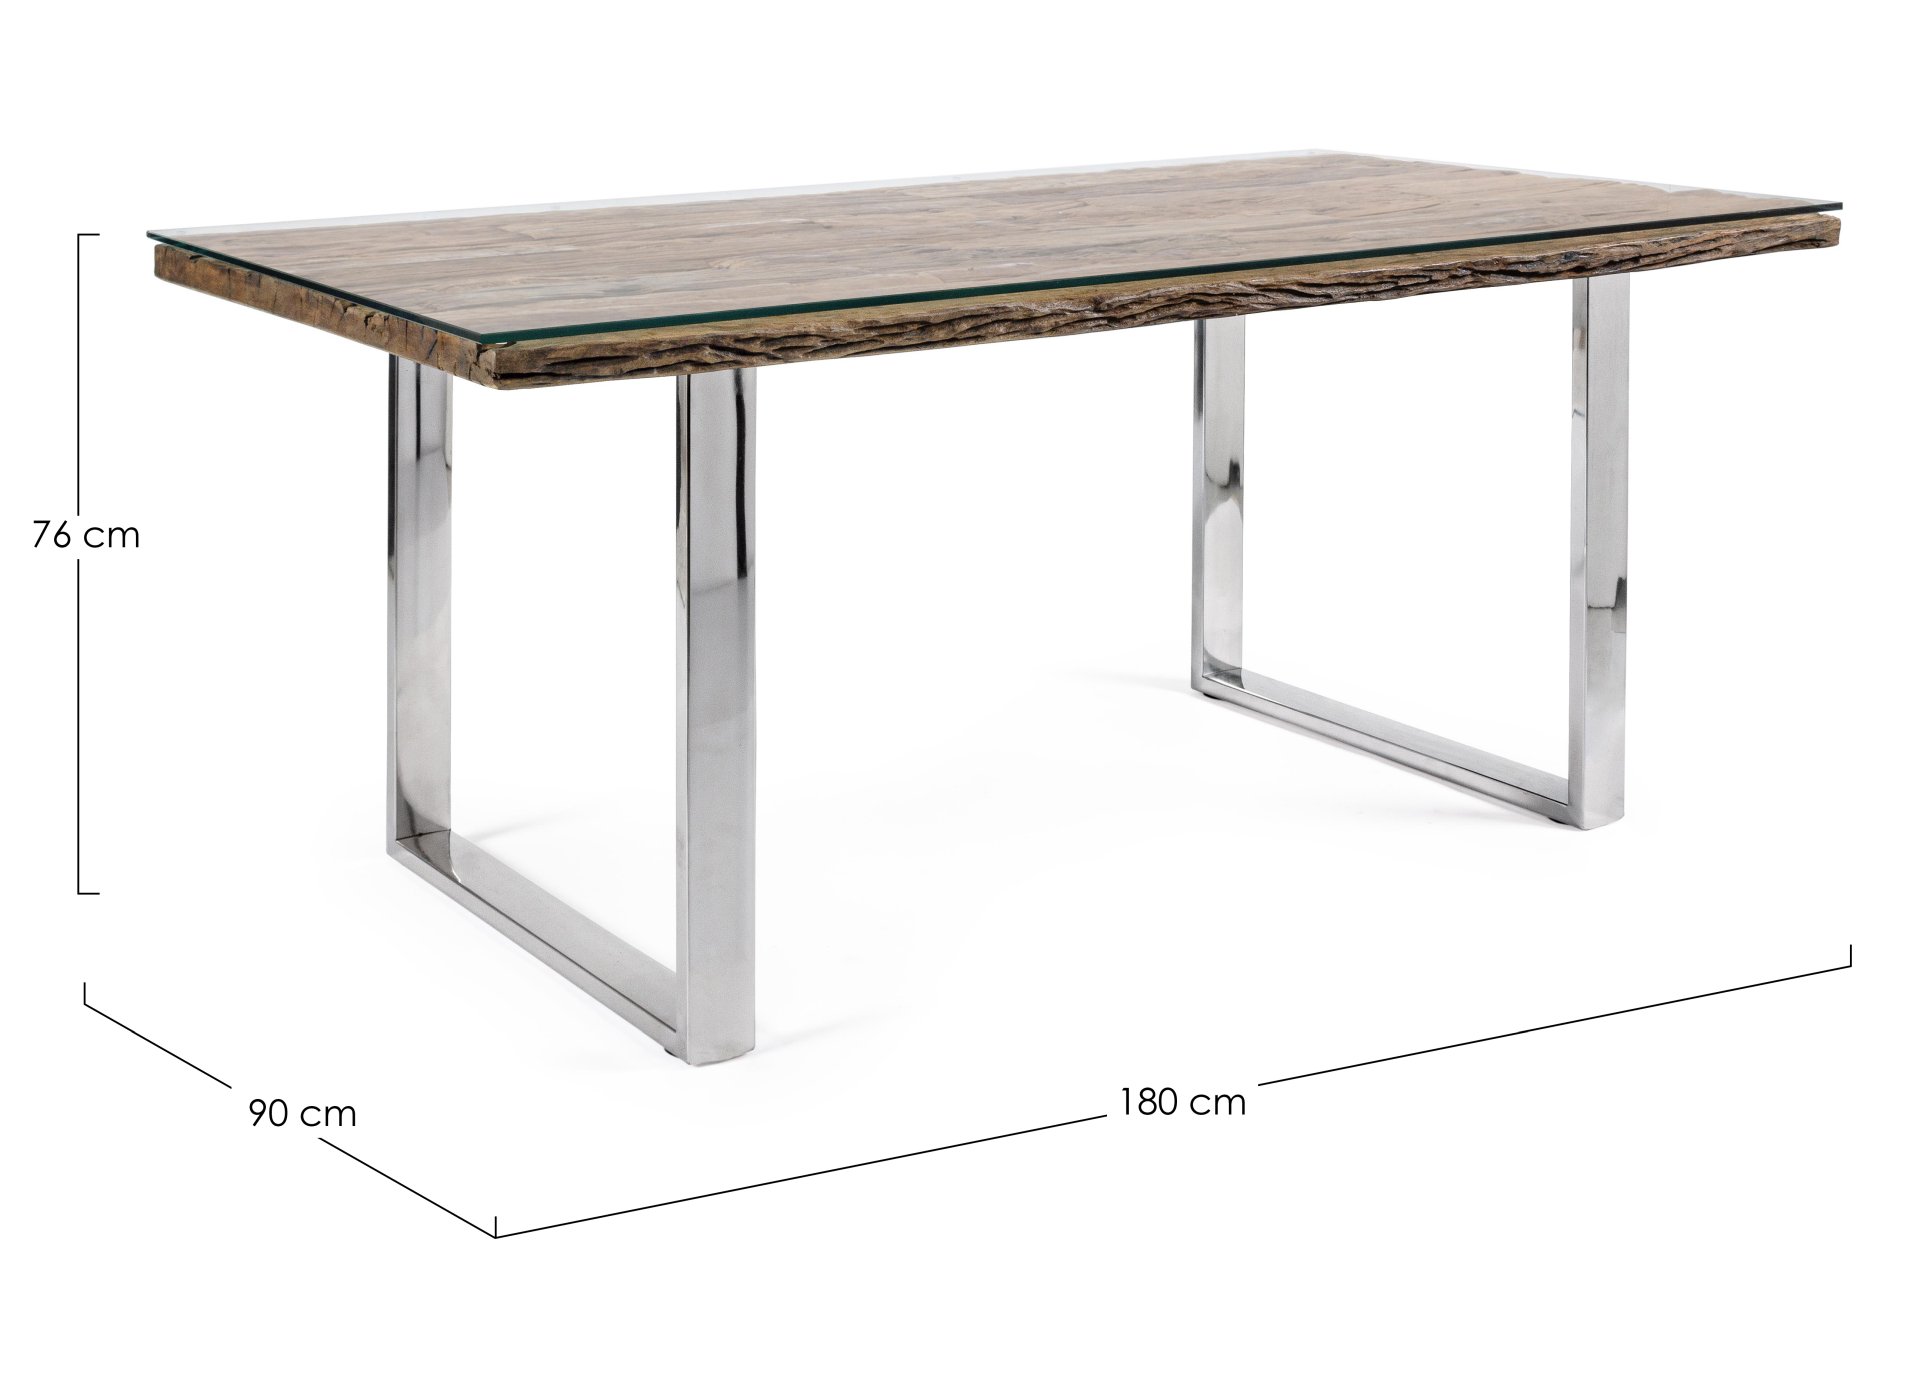 Der Esstisch Stanton überzeugt mit seinem moderndem Design gefertigt wurde er aus recyceltem Holz, welches einen natürlichen Farbton besitzt. Das Gestell des Tisches ist aus Metall und ist in einer silbernen Farbe. Der Tisch besitzt eine Breite von 180 cm